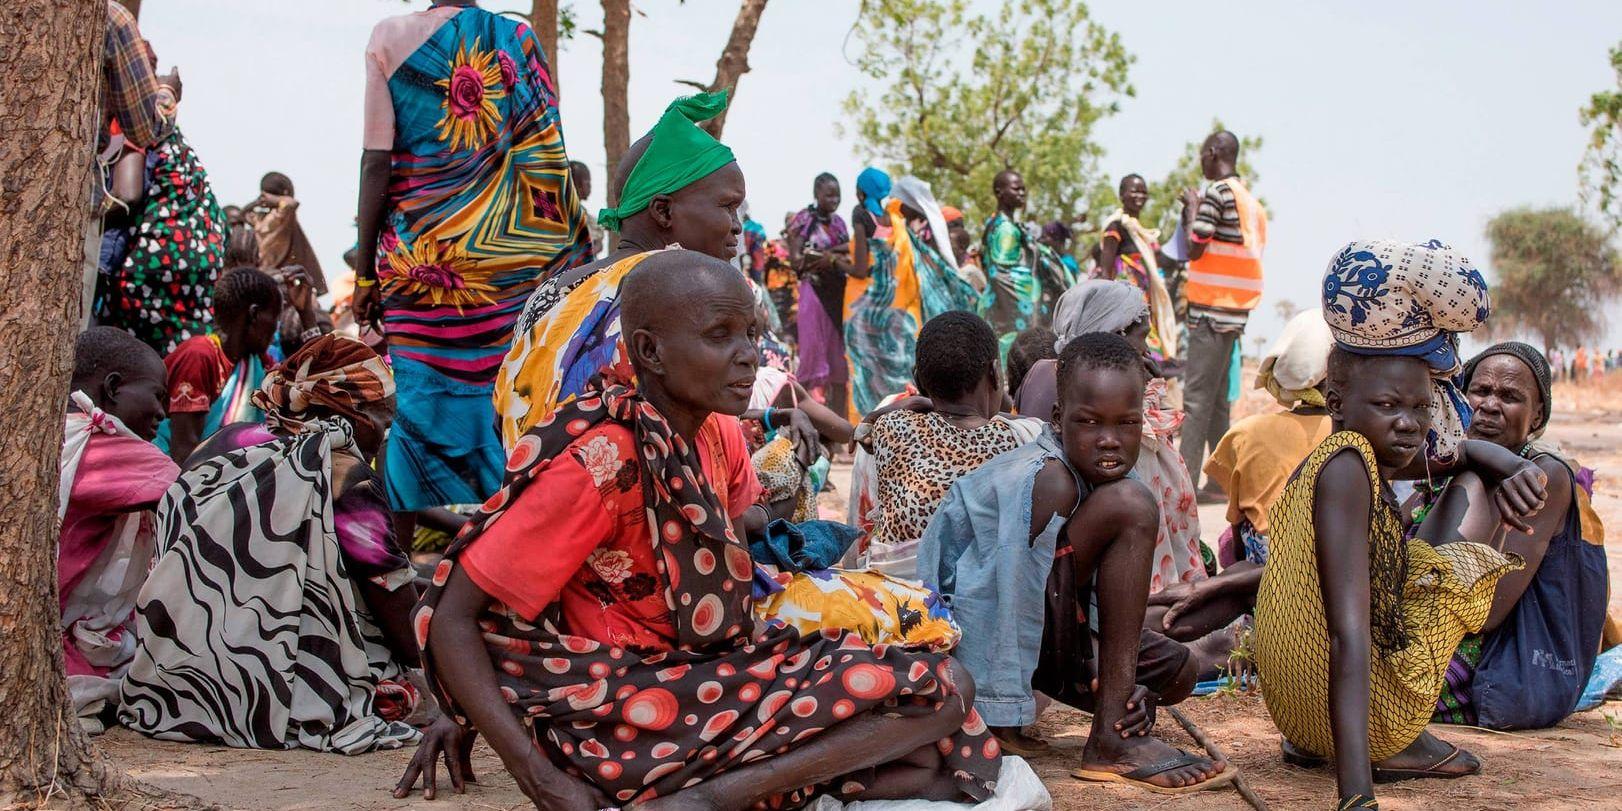 FN beskiver läget i svält- och krigsdrabbade Sydsudan som ett "ofattbart lidande". Bild från i april.